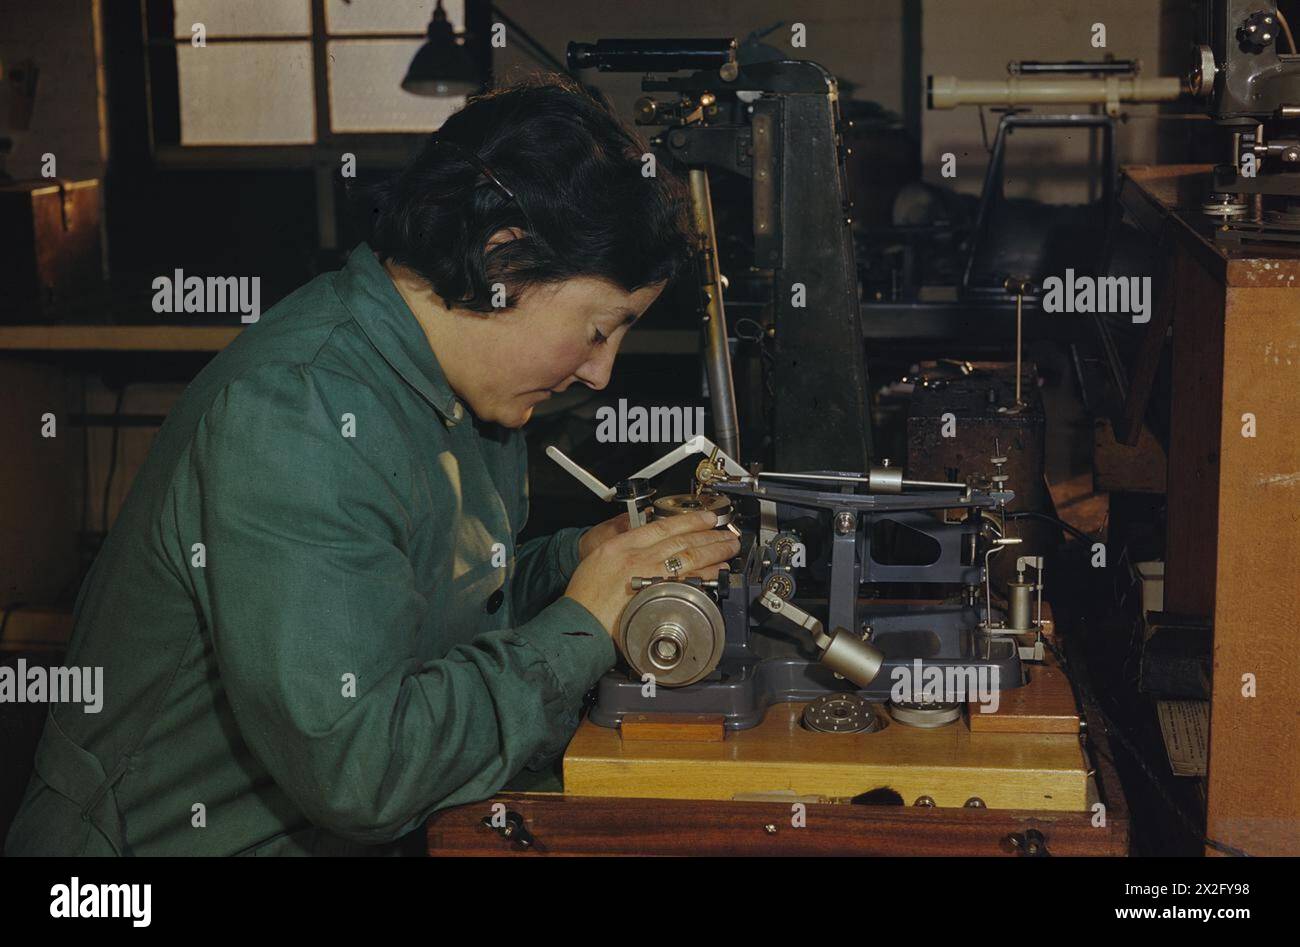 DONNE OPERAIE DI GUERRA IN GRAN BRETAGNA, 1945 - in una fabbrica a Camberwell, Londra, abili artigiani realizzano strumenti di precisione. Una donna operaia di guerra imposta una macchina per tagliare il reticolo di uno strumento di misurazione di precisione Foto Stock